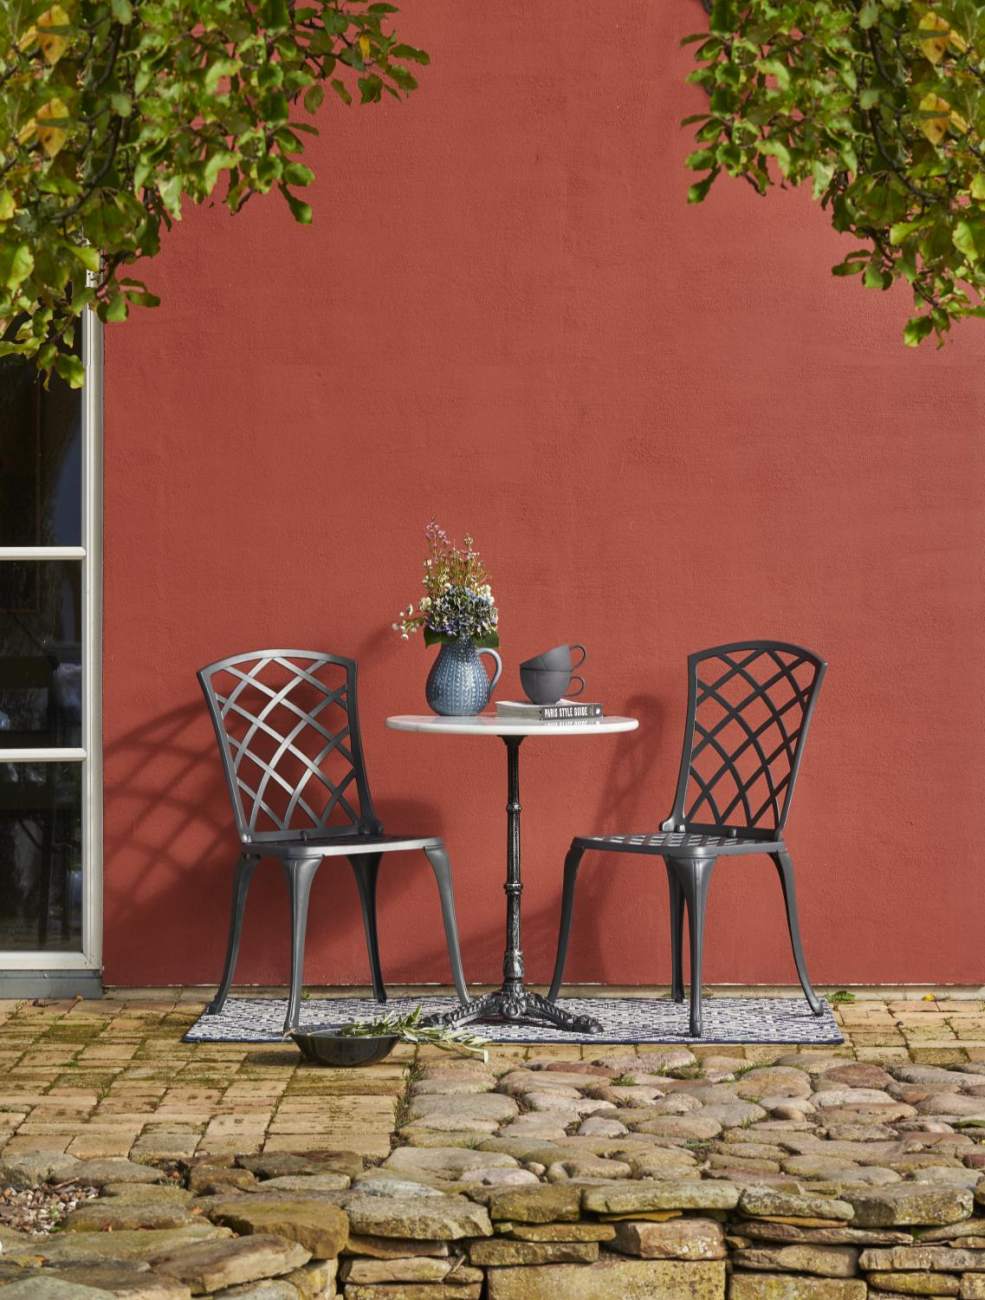 Der Gartenstuhl Arras überzeugt mit seinem modernen Design. Gefertigt wurde er aus Metall, welches einen grauen Farbton besitzt. Das Gestell ist aus Metall und hat eine graue Farbe. Die Sitzhöhe des Sessels beträgt 43 cm.